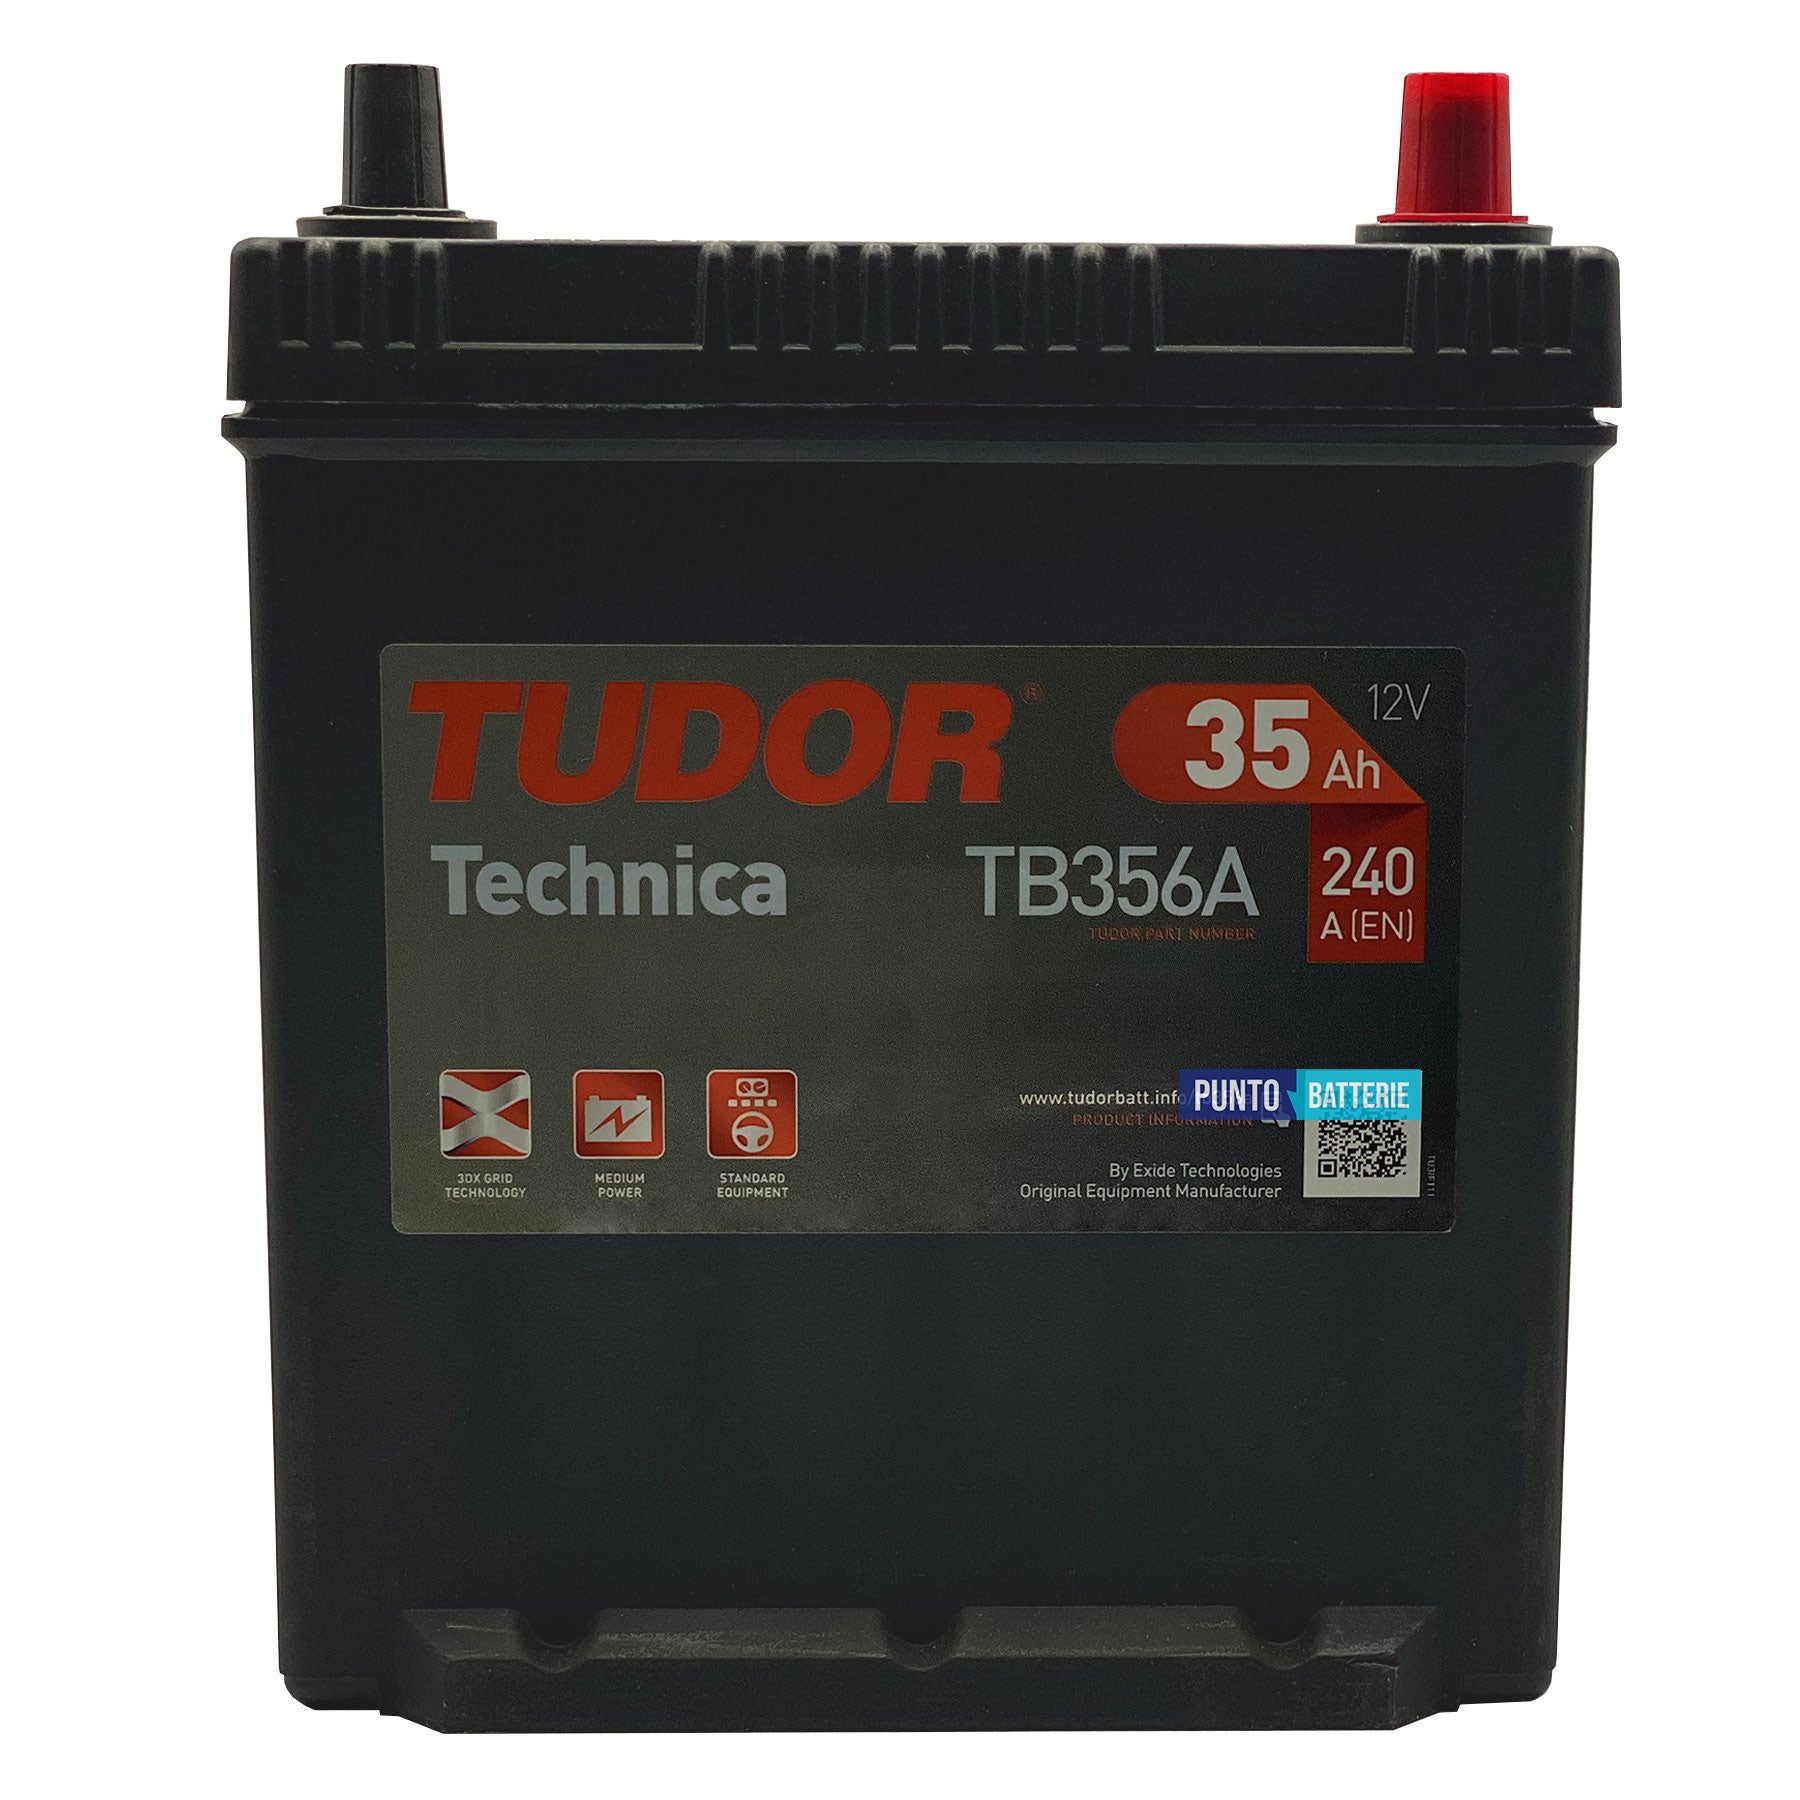 Batteria Tudor 35Ah, 12V, 240A, 187x127x220mm